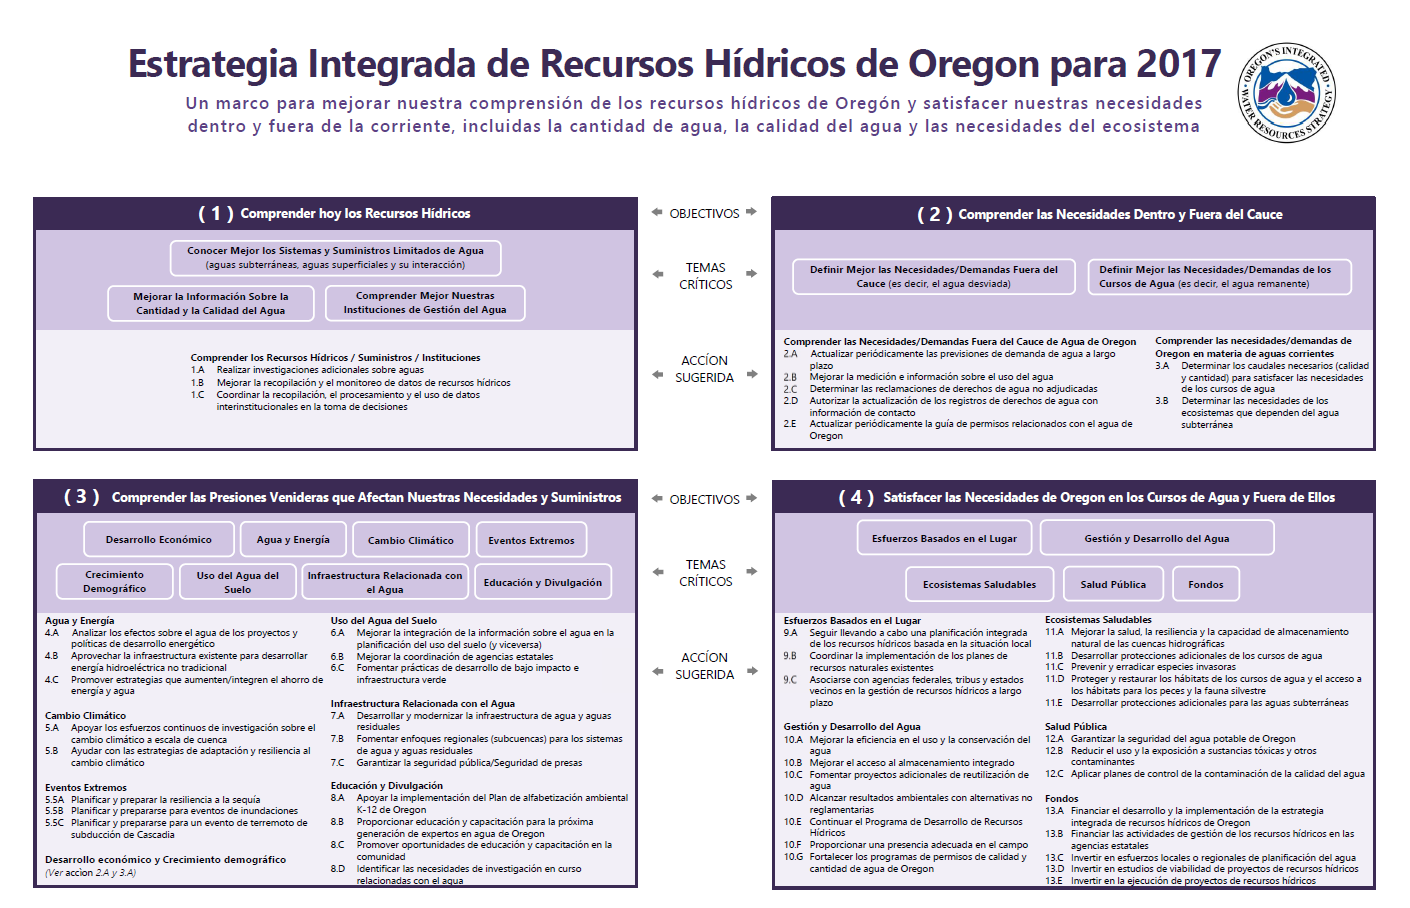 Una copia en PDF del estrategia integrade de recursos hidricos de Oregon en espanol